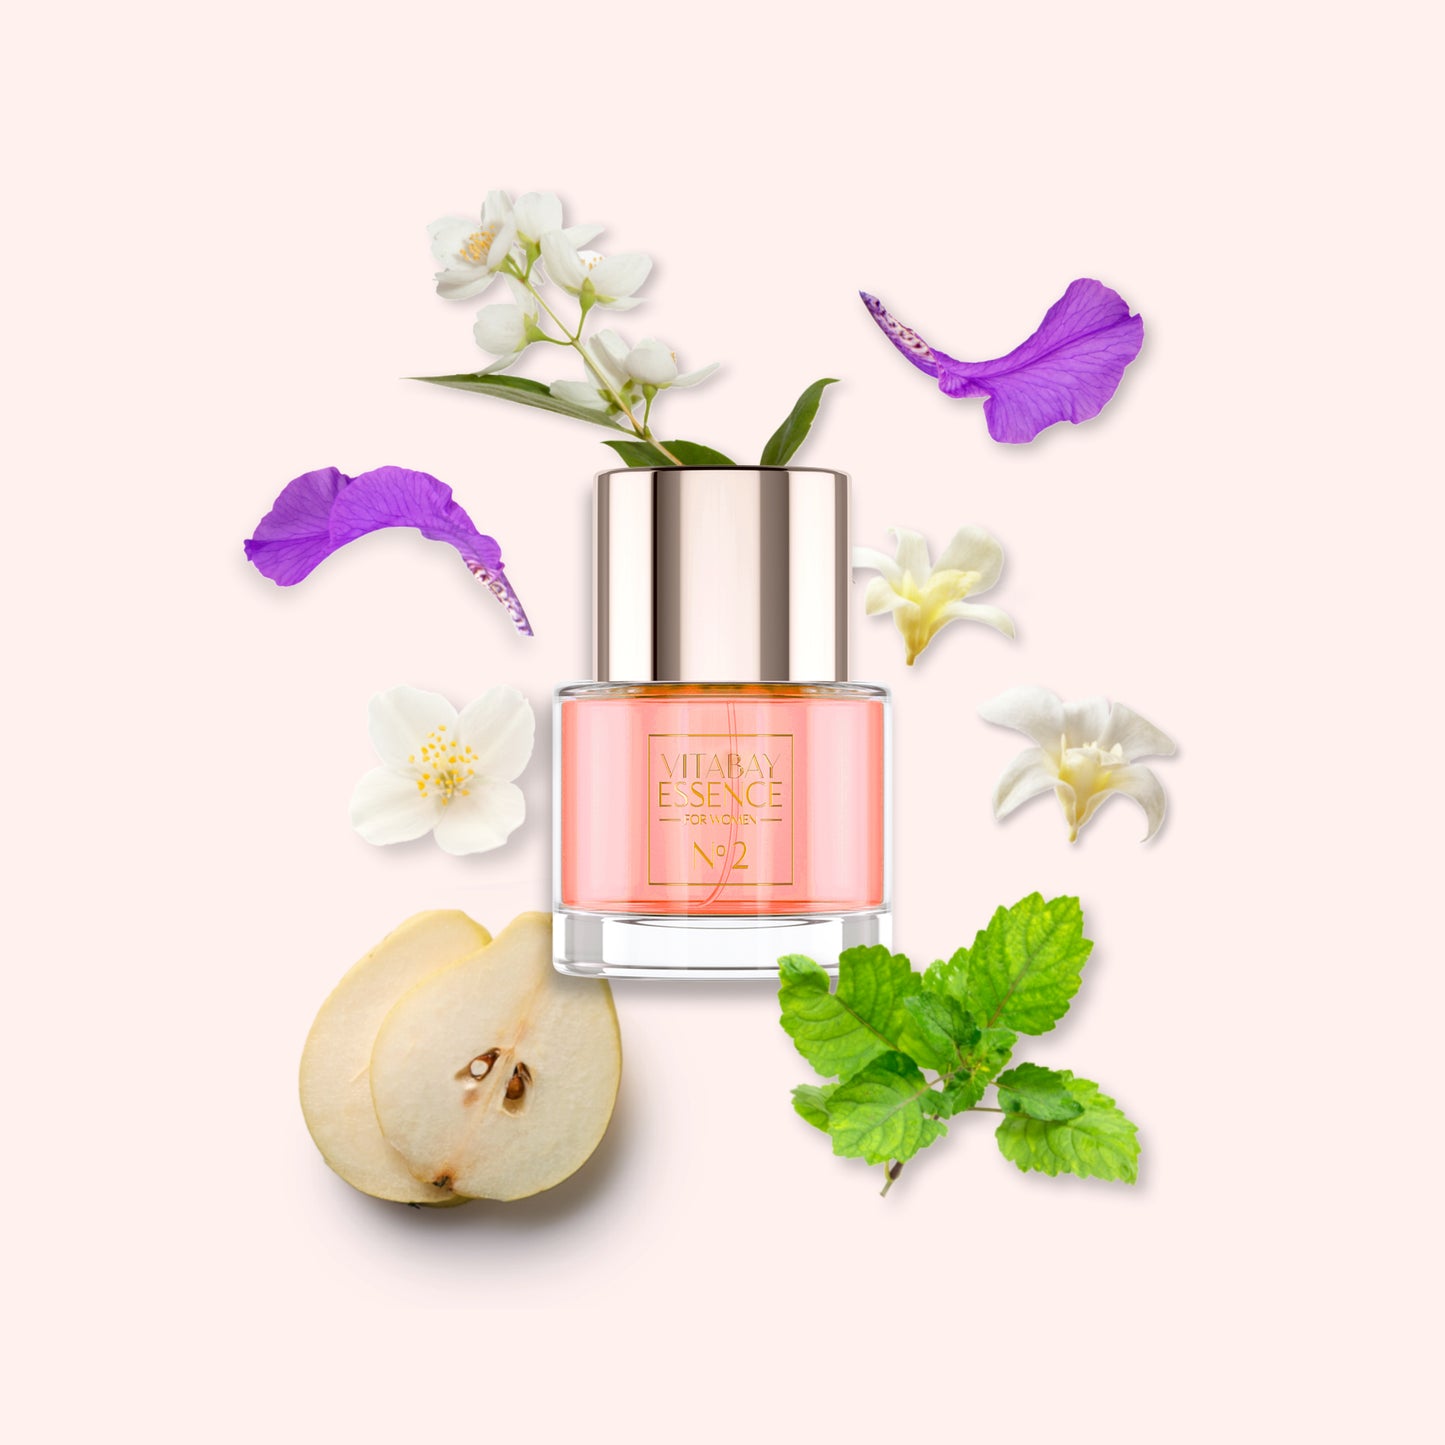 Vitabay Essence Fine Fragrance for Women No. 2 - 50 ml – Eau de Parfum 10% Parfümöl Vaporisateur / S